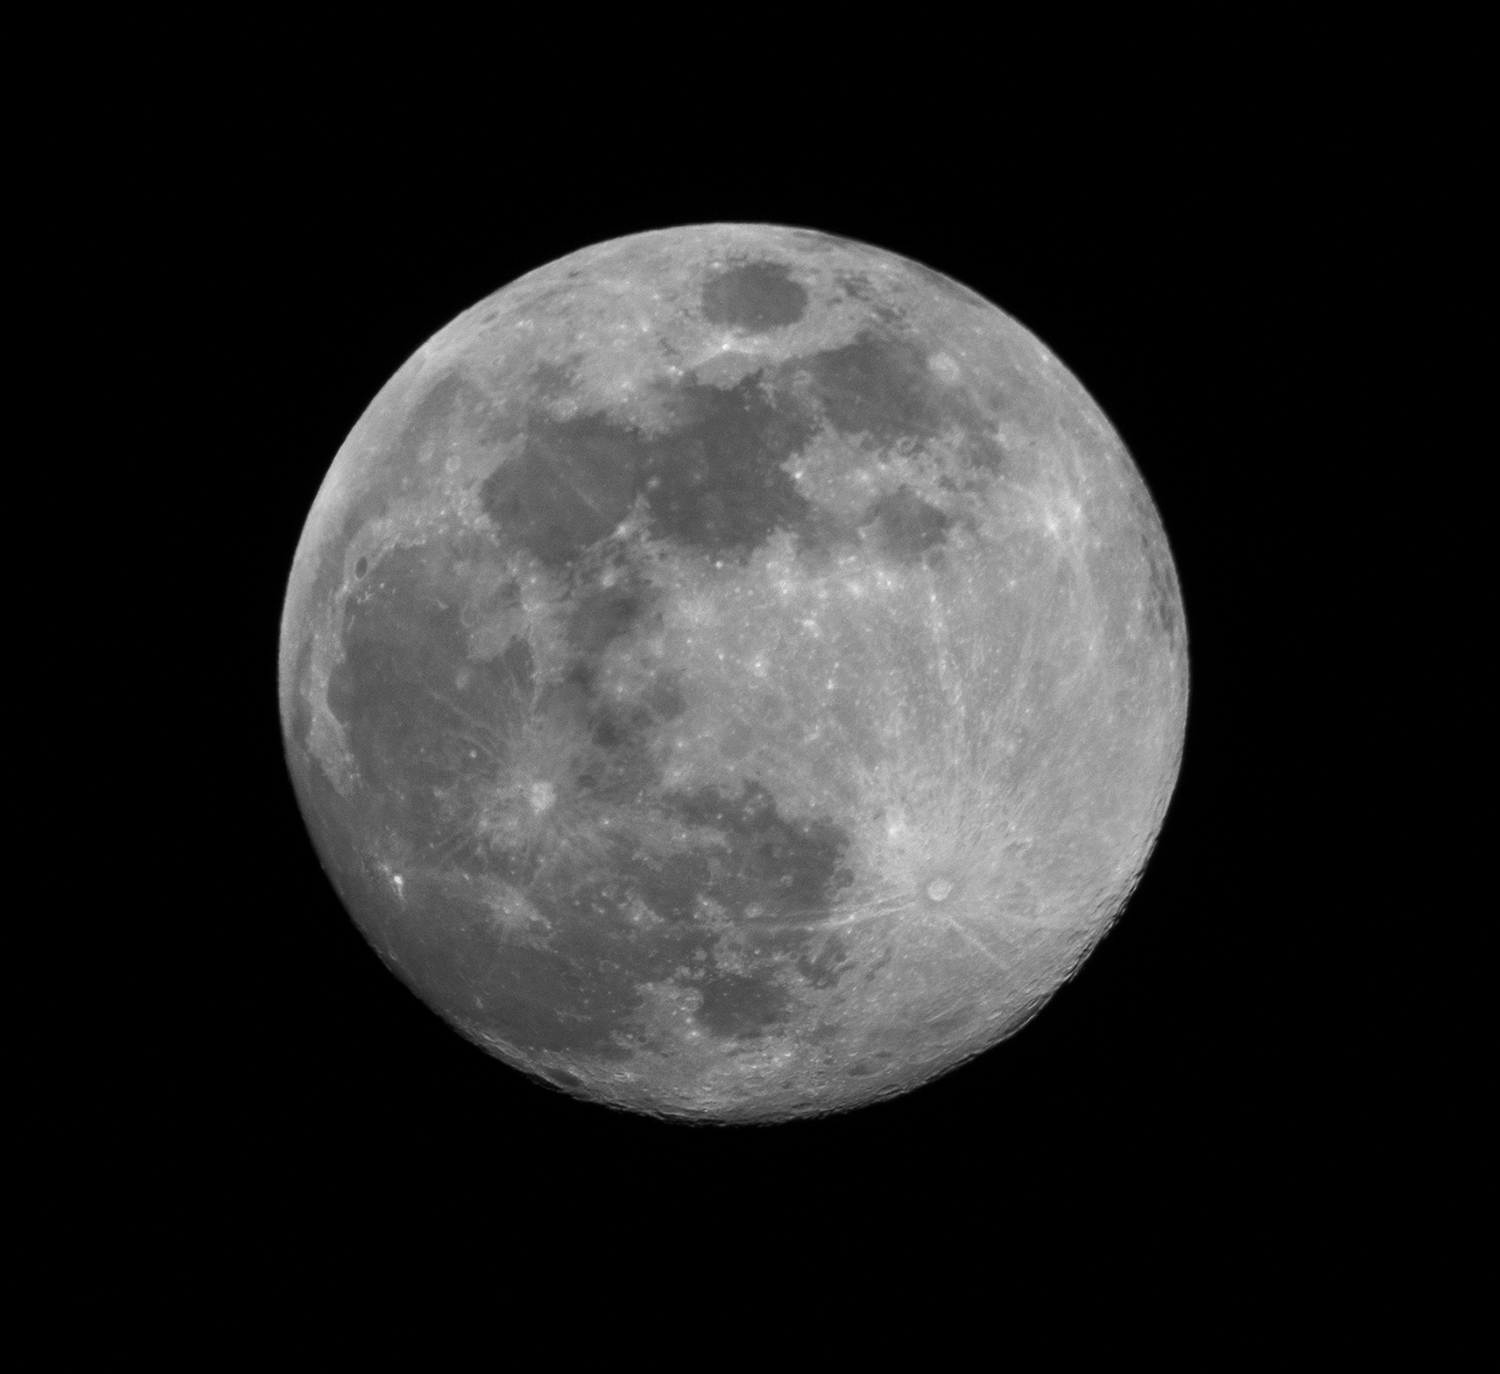 photo-of-a-full-moon-near-nashville-may-17-2019.jpg